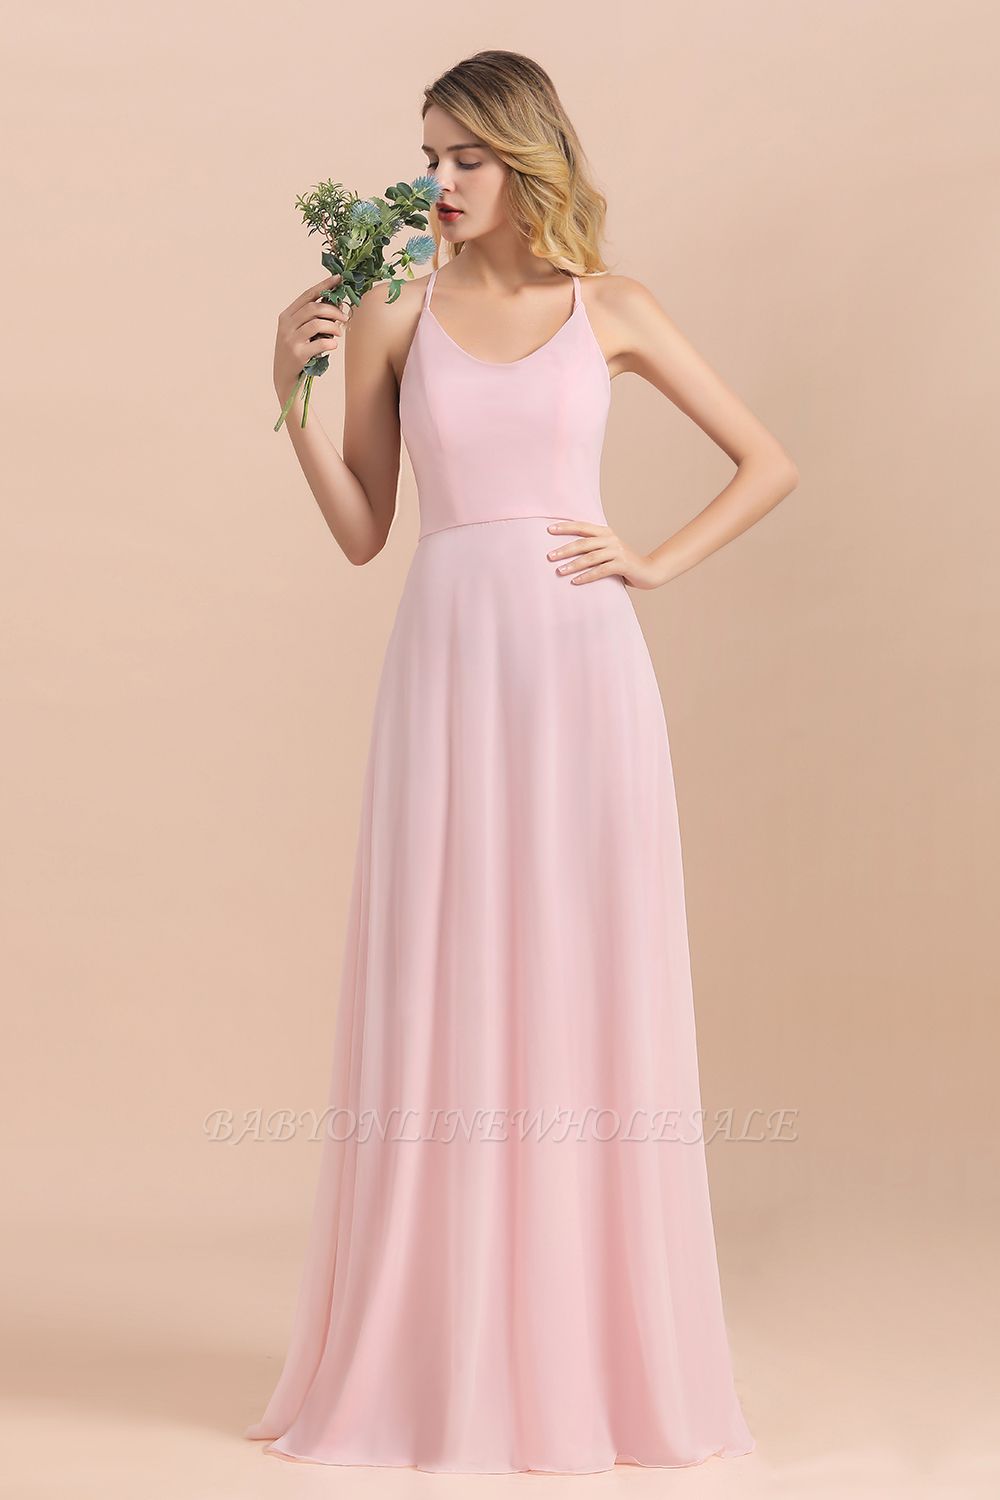 Dreamful Straps Aline Розовое платье для свадебной вечеринки Пляжное свадебное платье